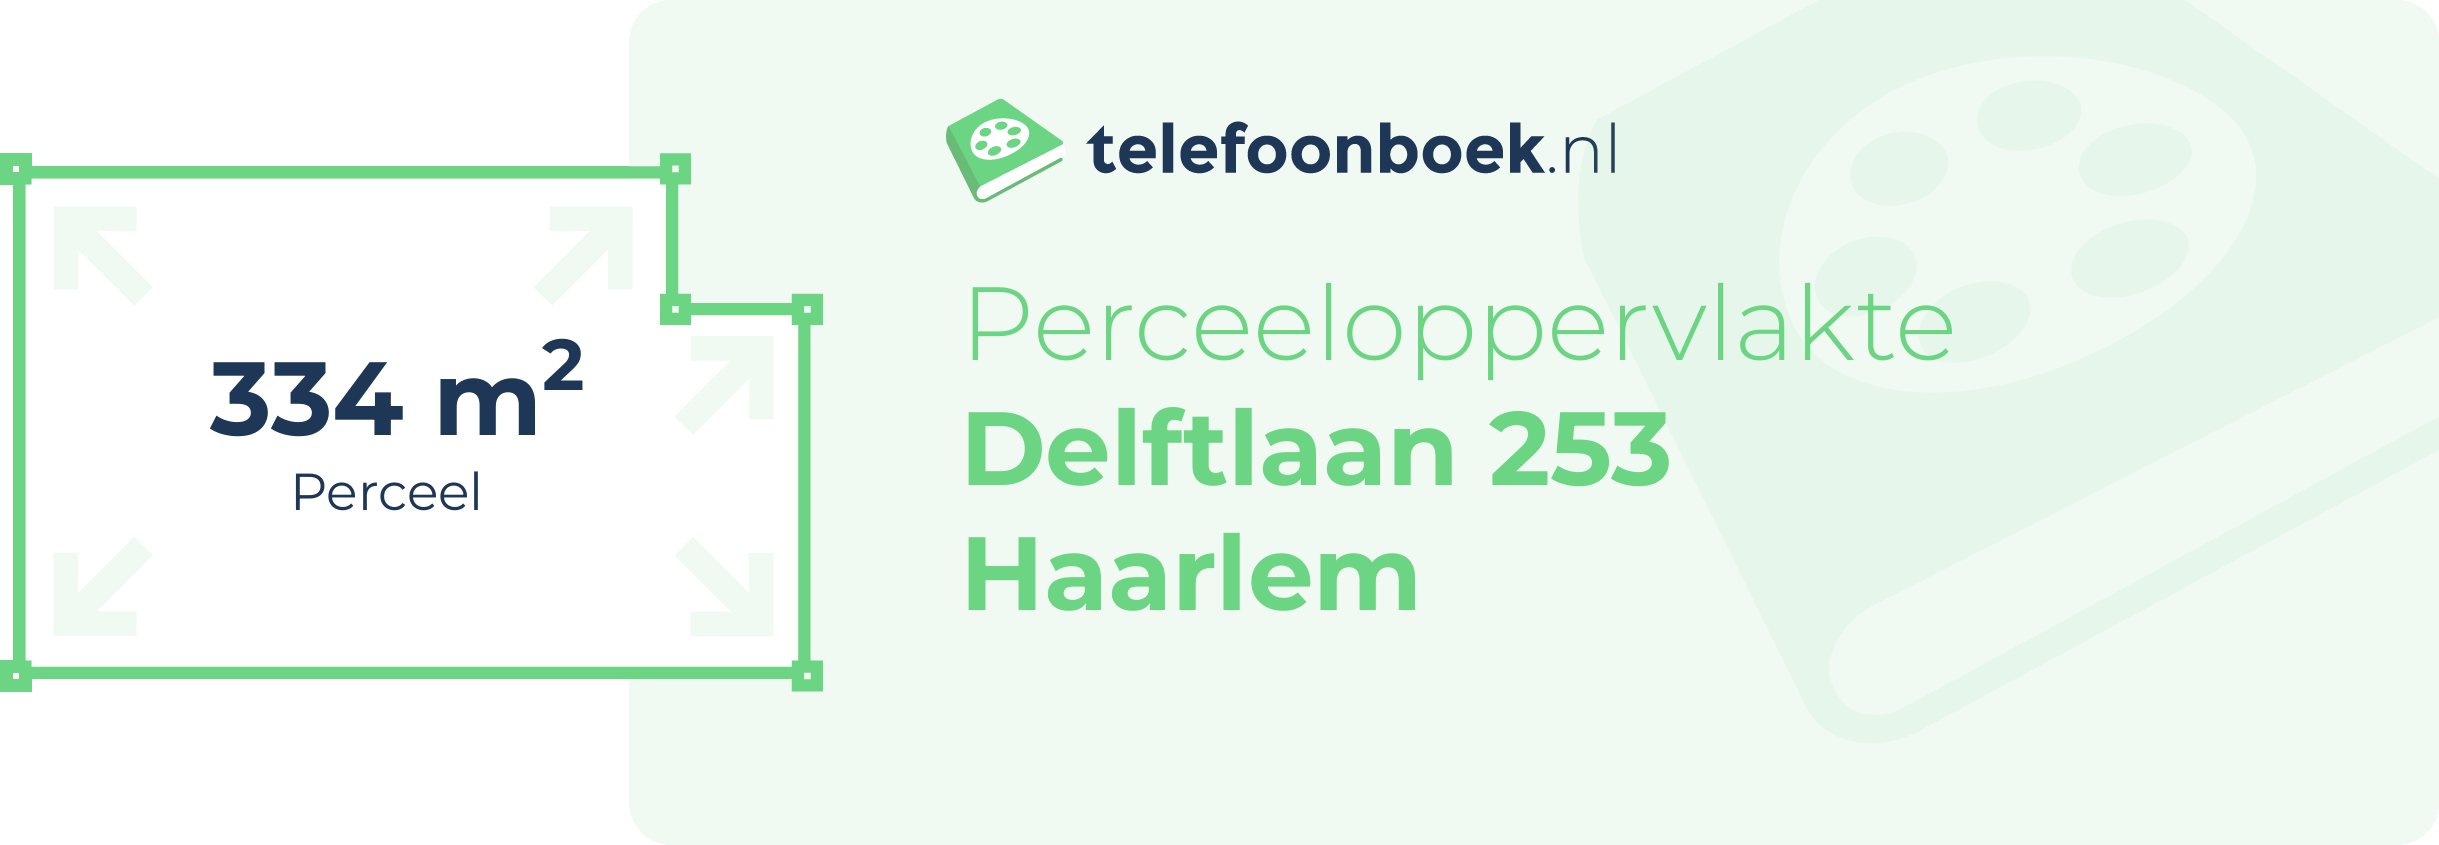 Perceeloppervlakte Delftlaan 253 Haarlem